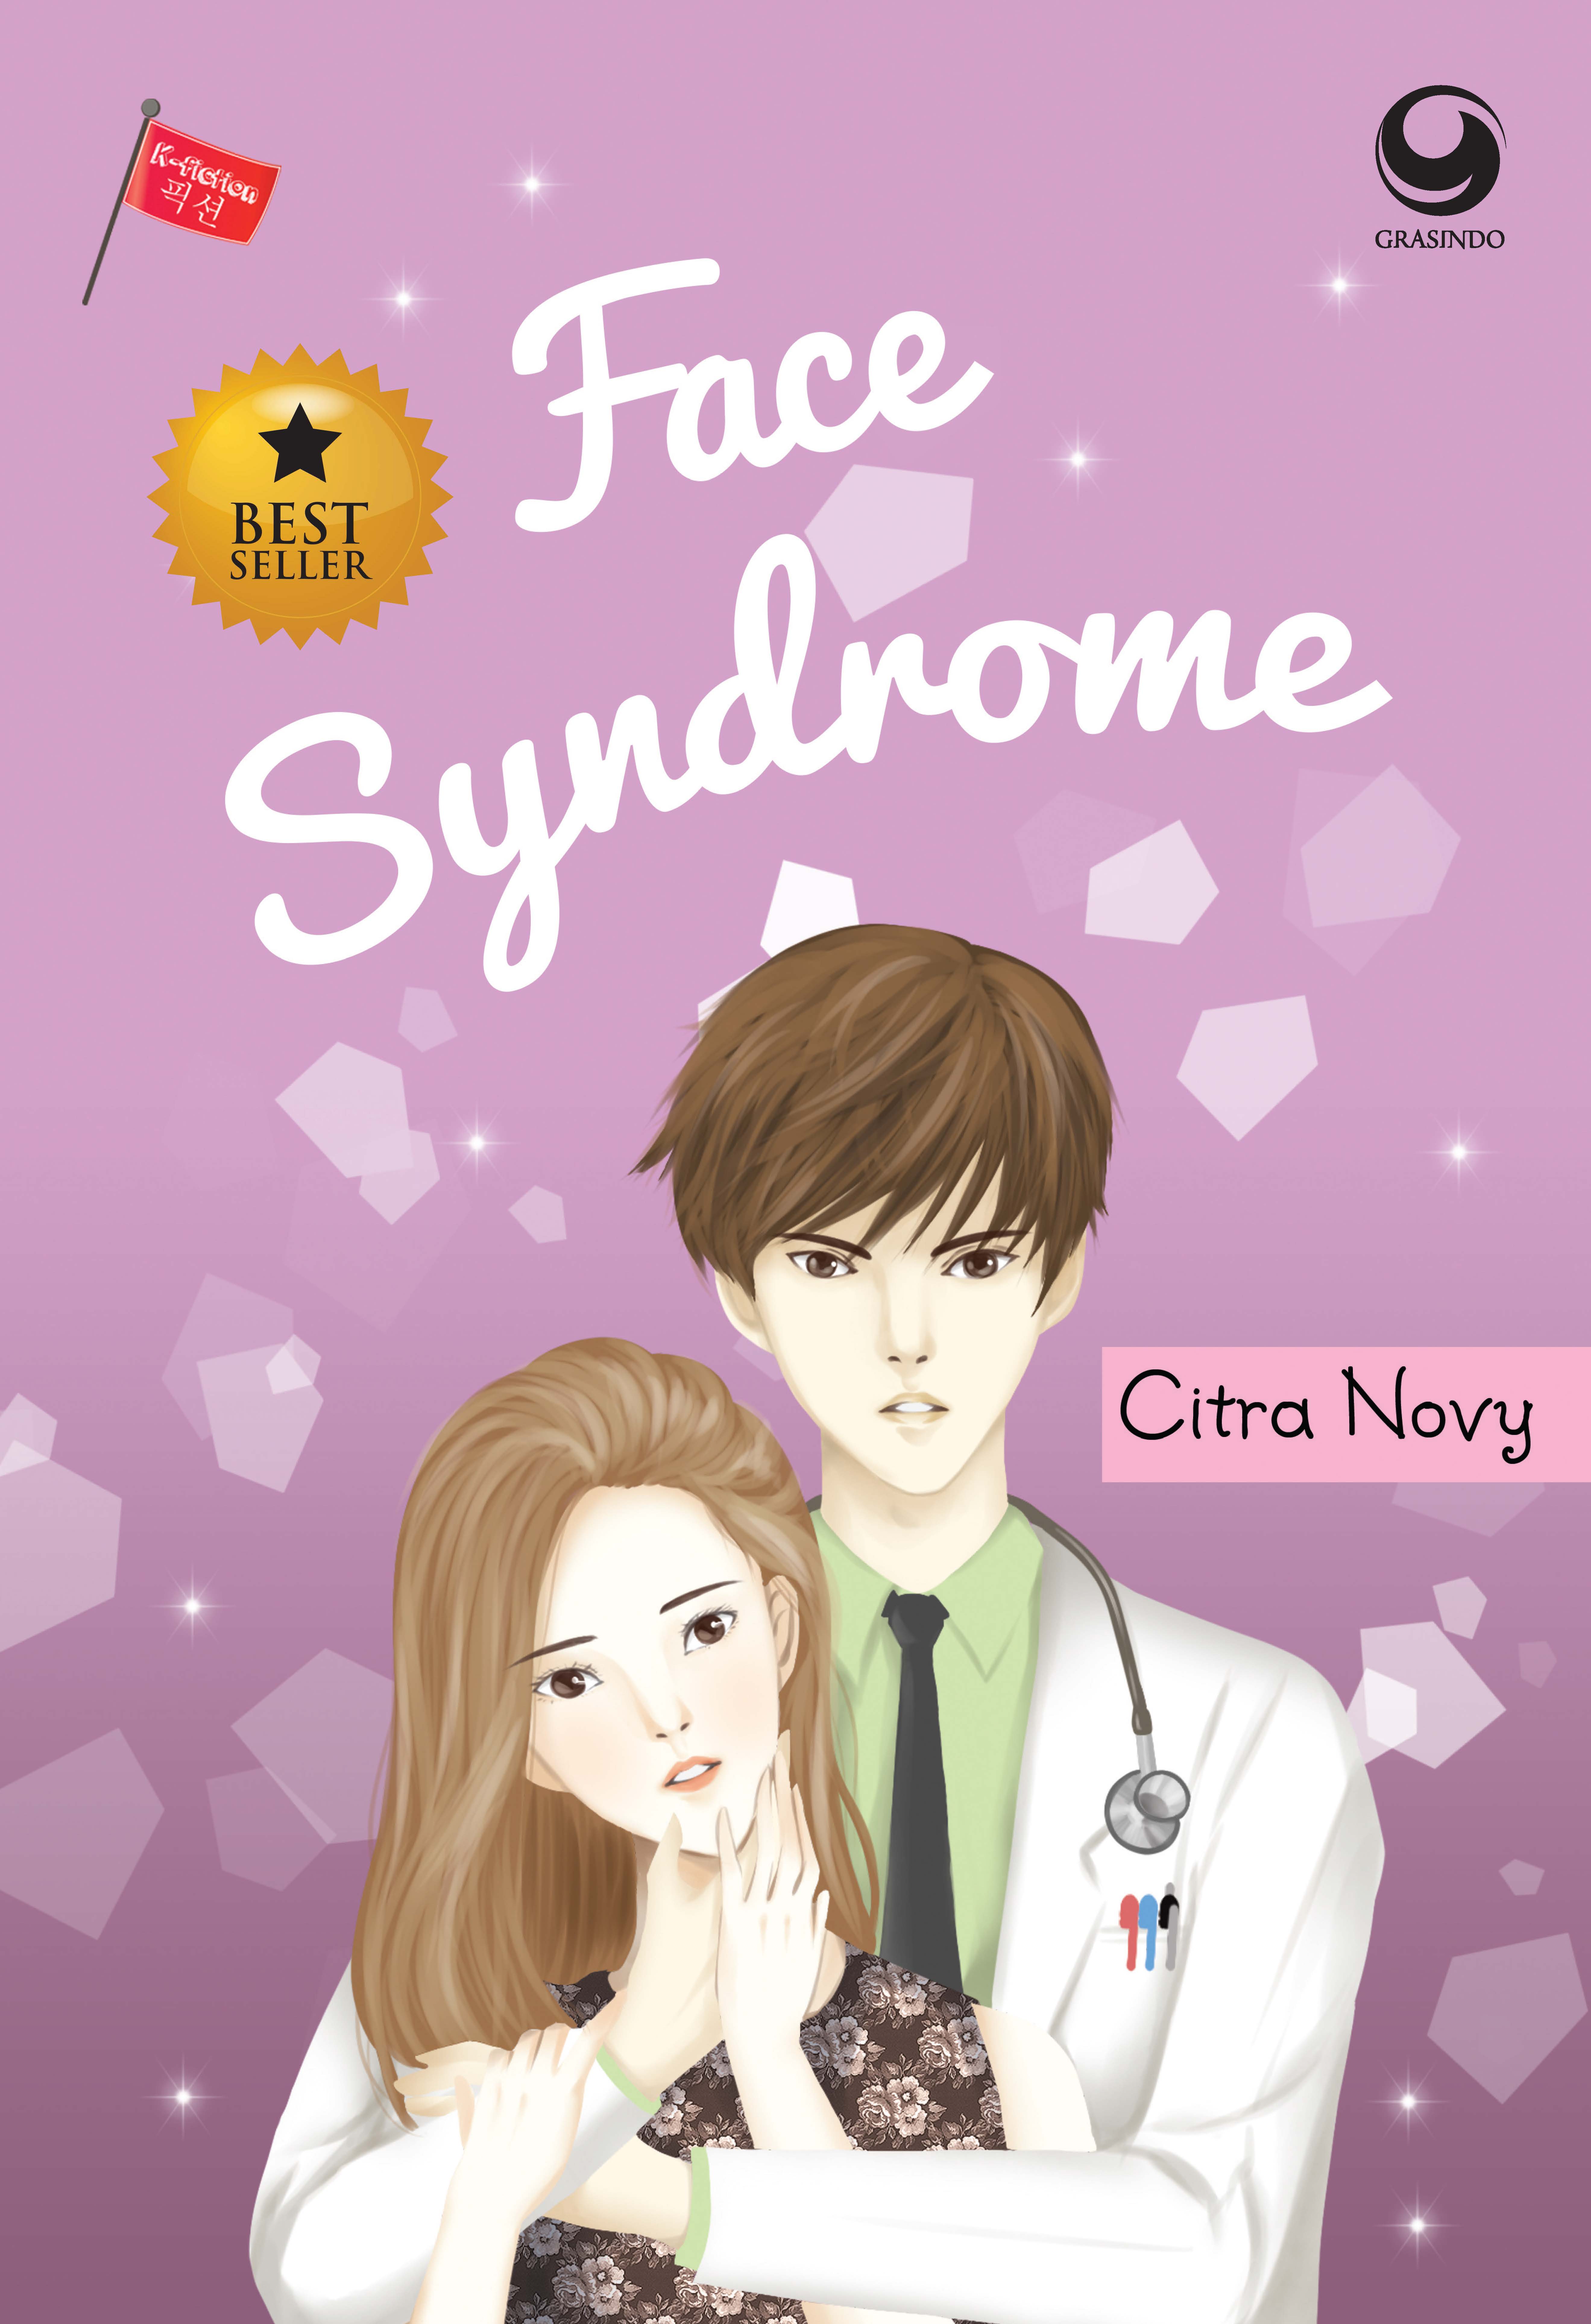 Face Syndrome